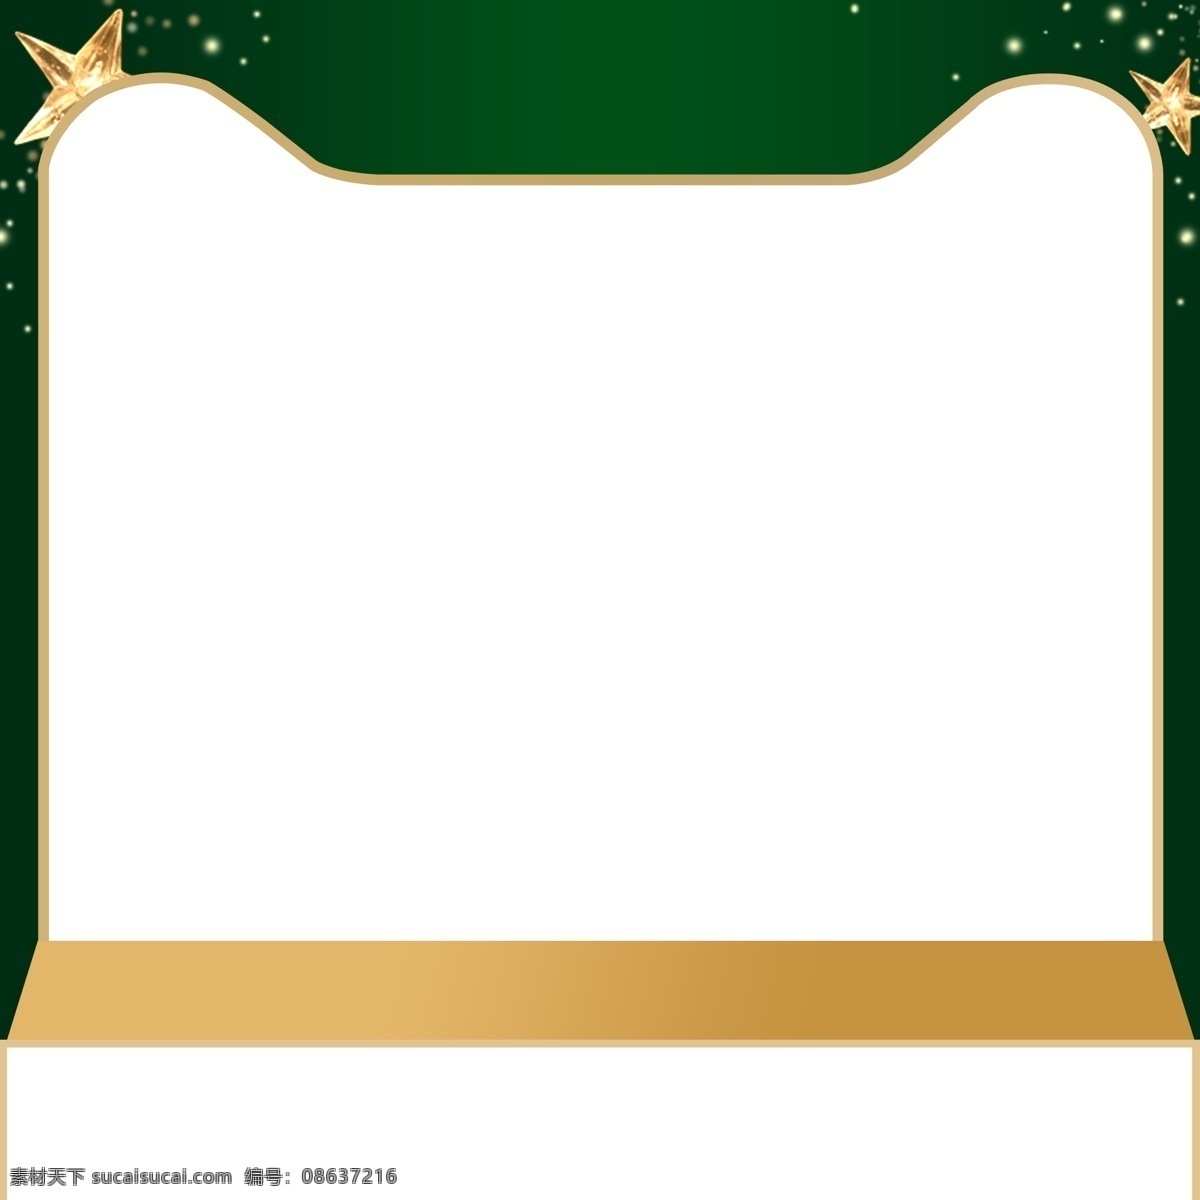 简约 圣诞 主 图 背景 白色 猫头框 绿色背景 圣诞背景 主图背景 背景素材 直通车